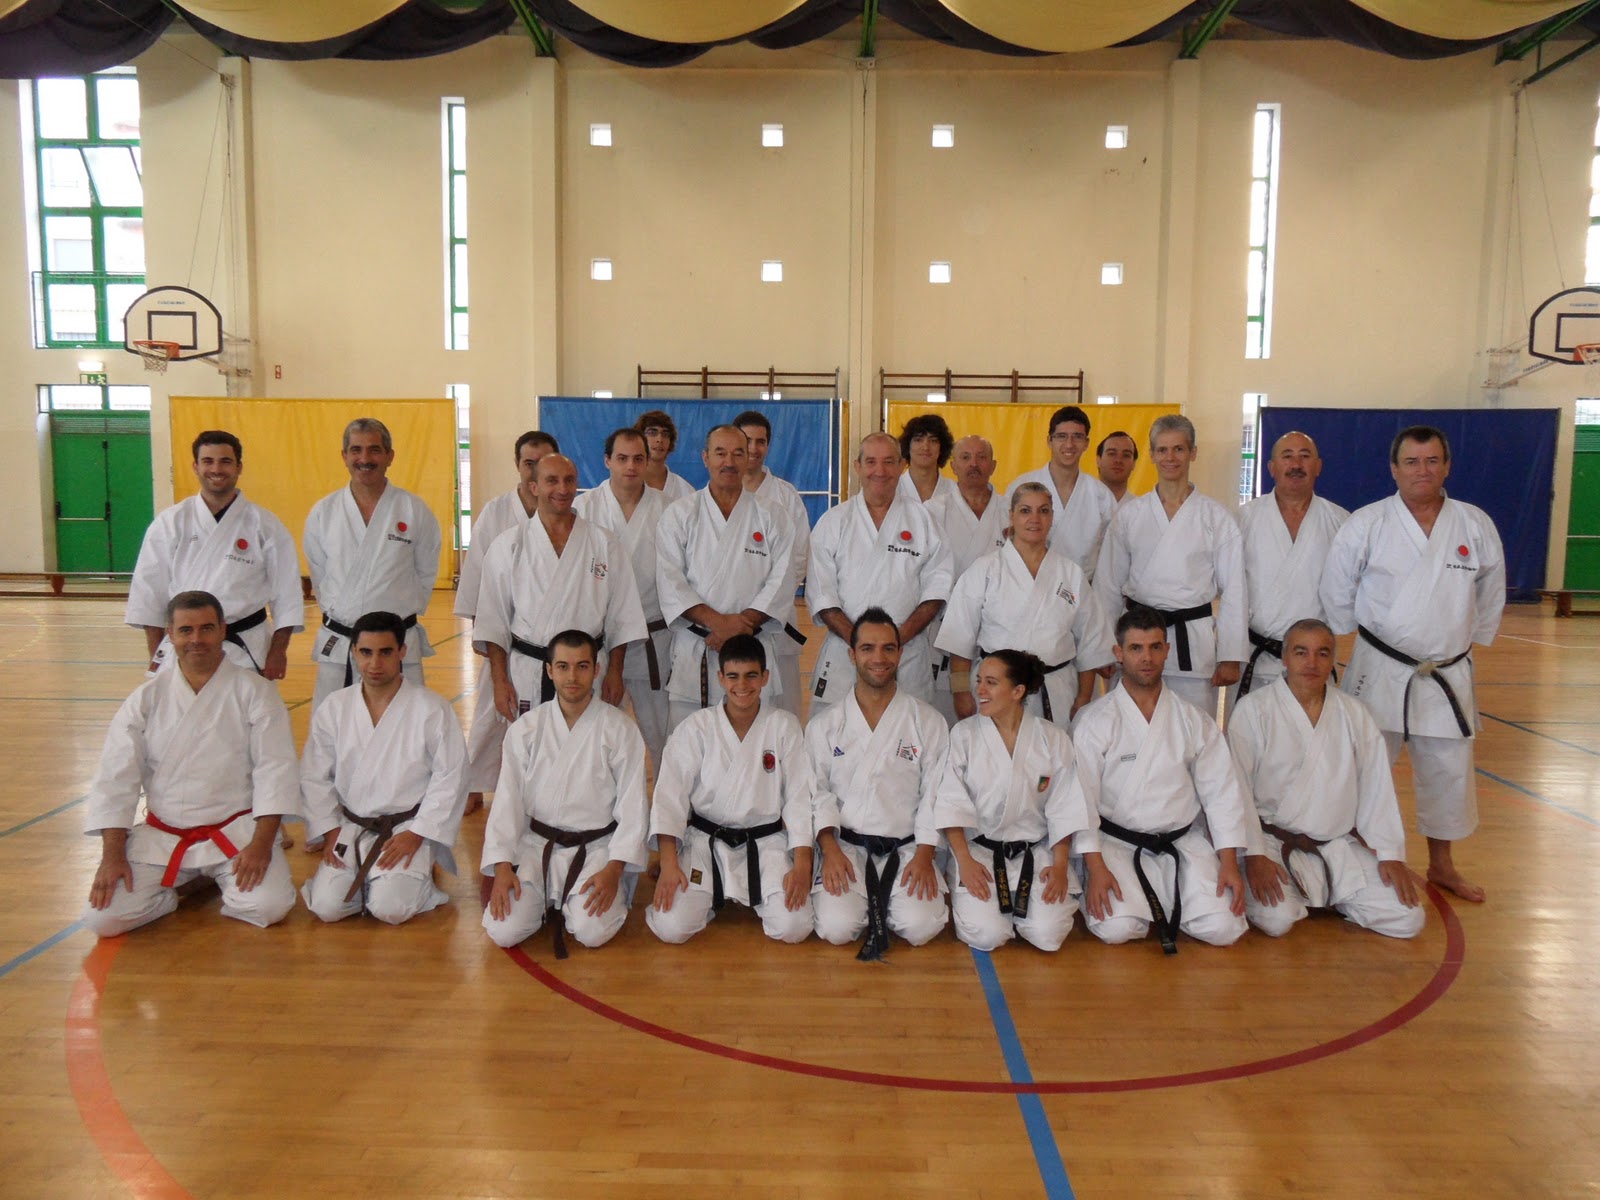 Associação Karate Shotokan Trancoso FormaÇÃo Japan Karate Association Portugal